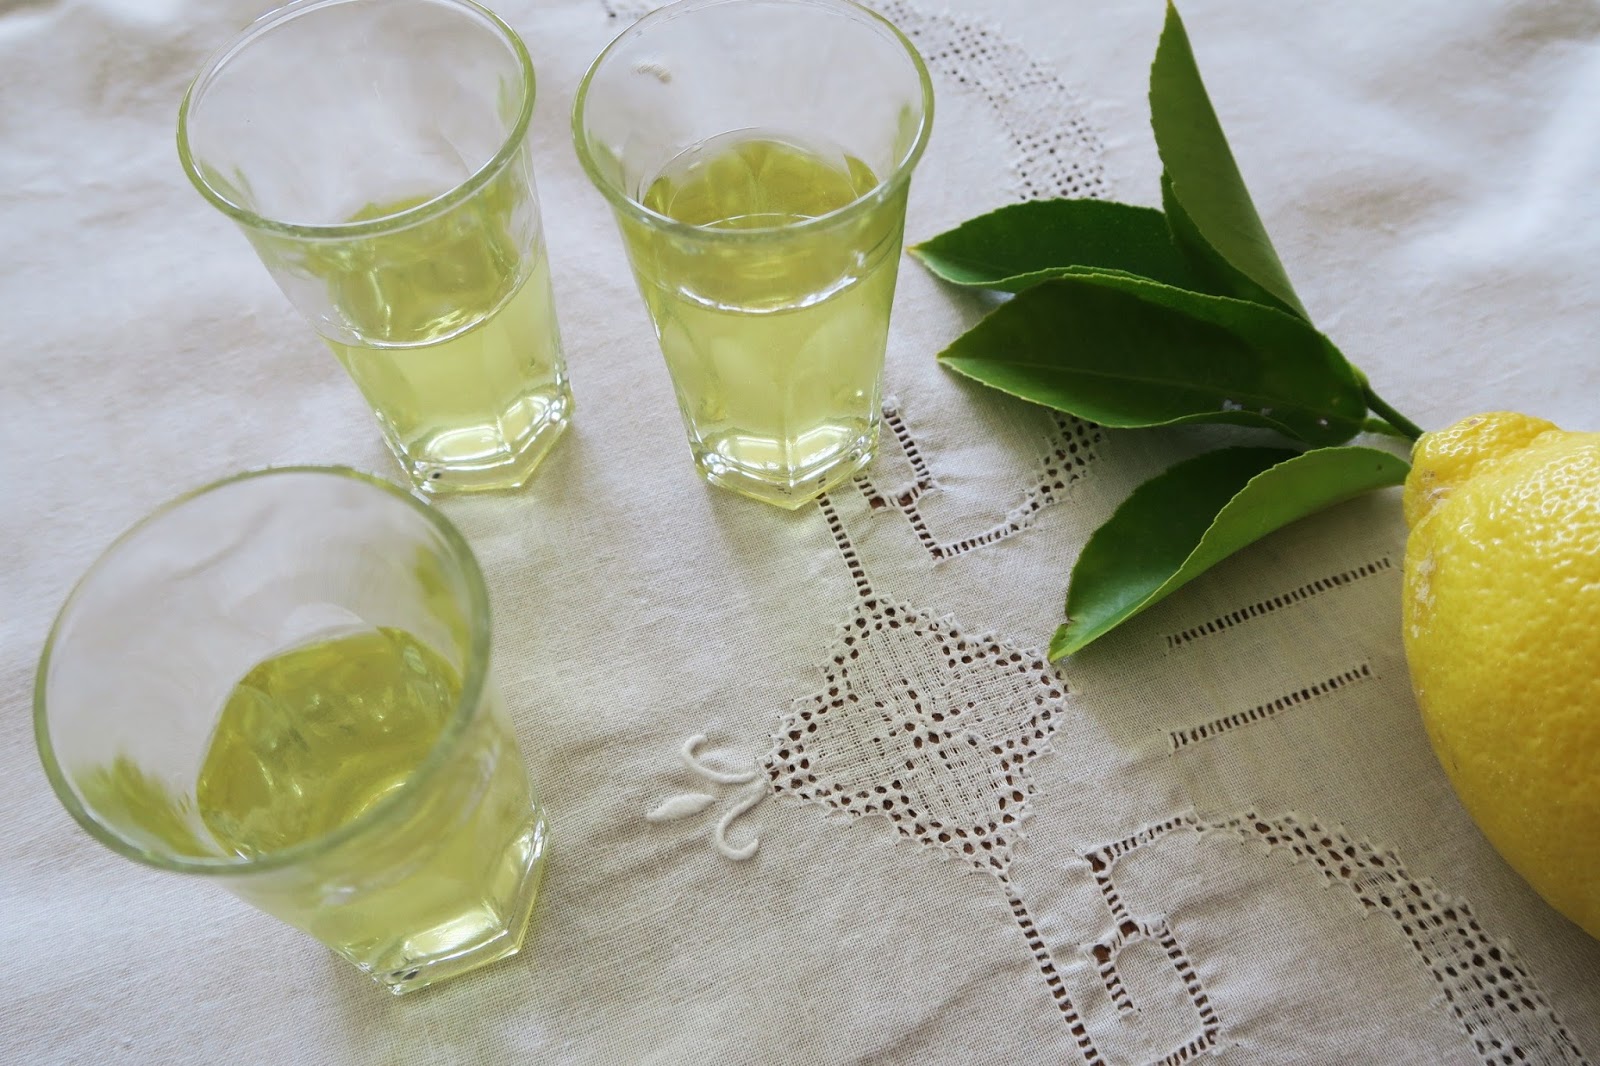 Cucina Conversations: Limoncello (Lemon Liqueur) Limoncetti